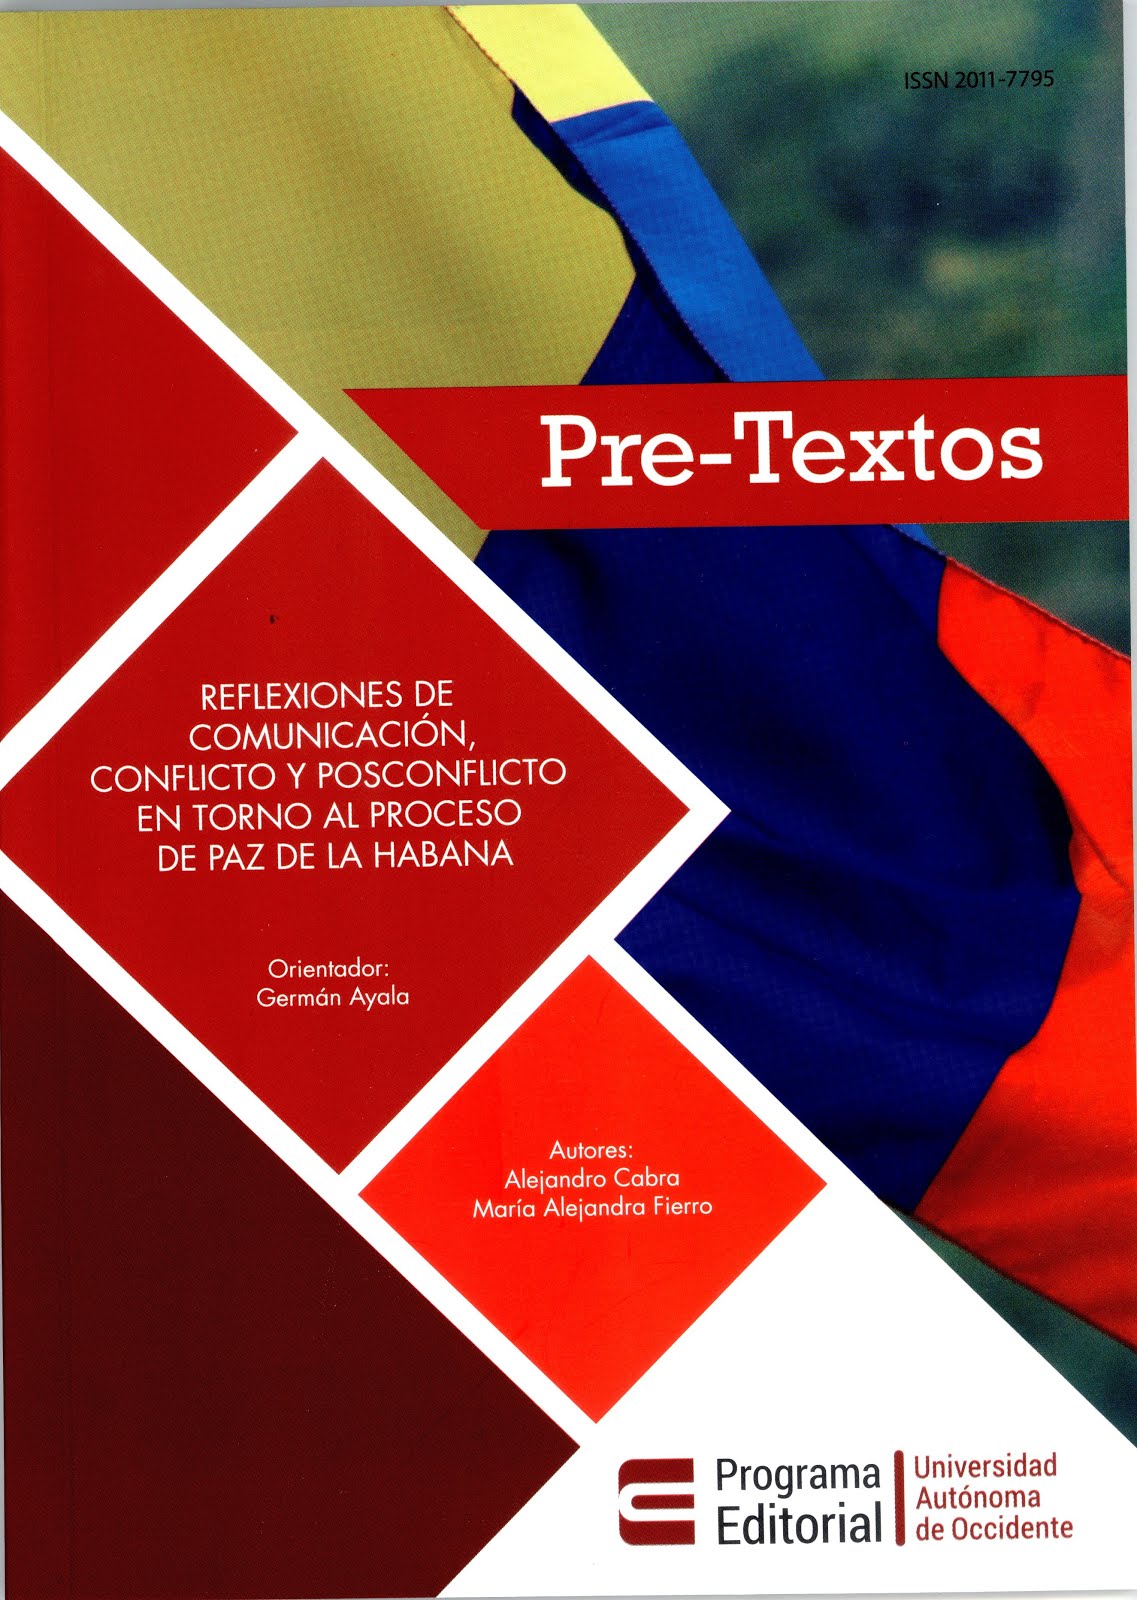 Publicación de dos estudiantes del curso Comunicación, Conflicto y Posconflicto. 2016